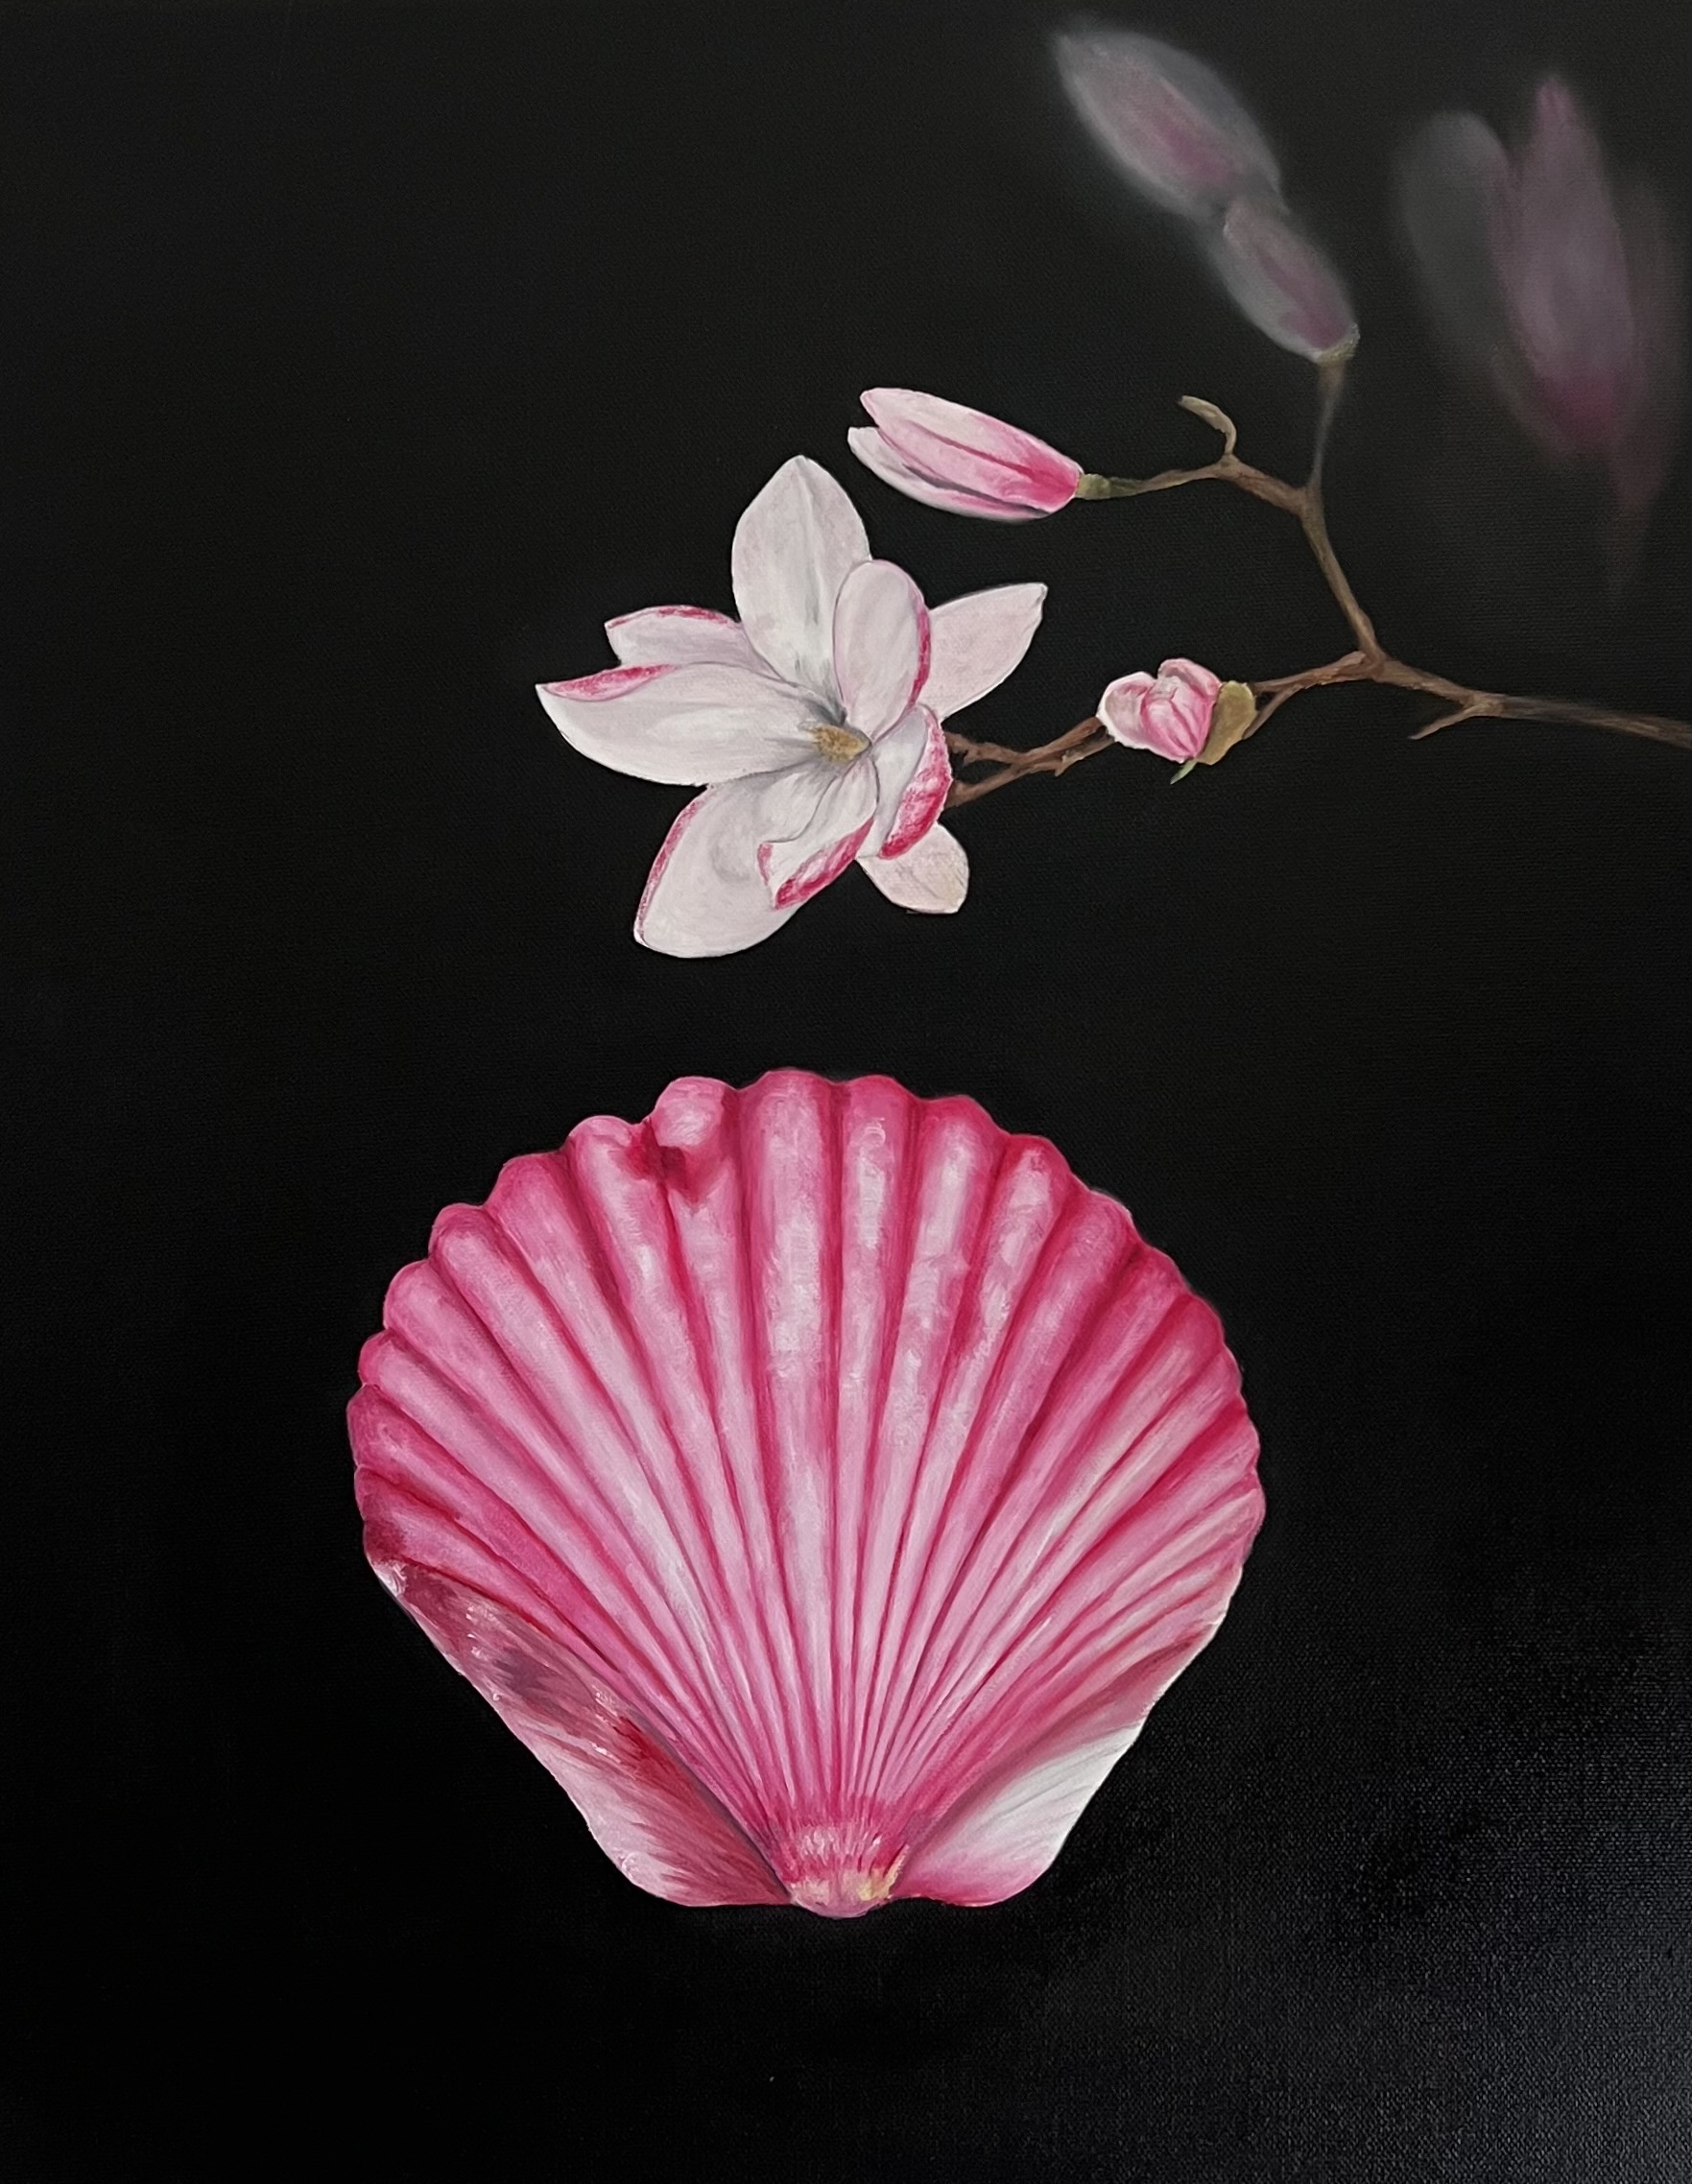 Pink Magnolias by the Sea - Original